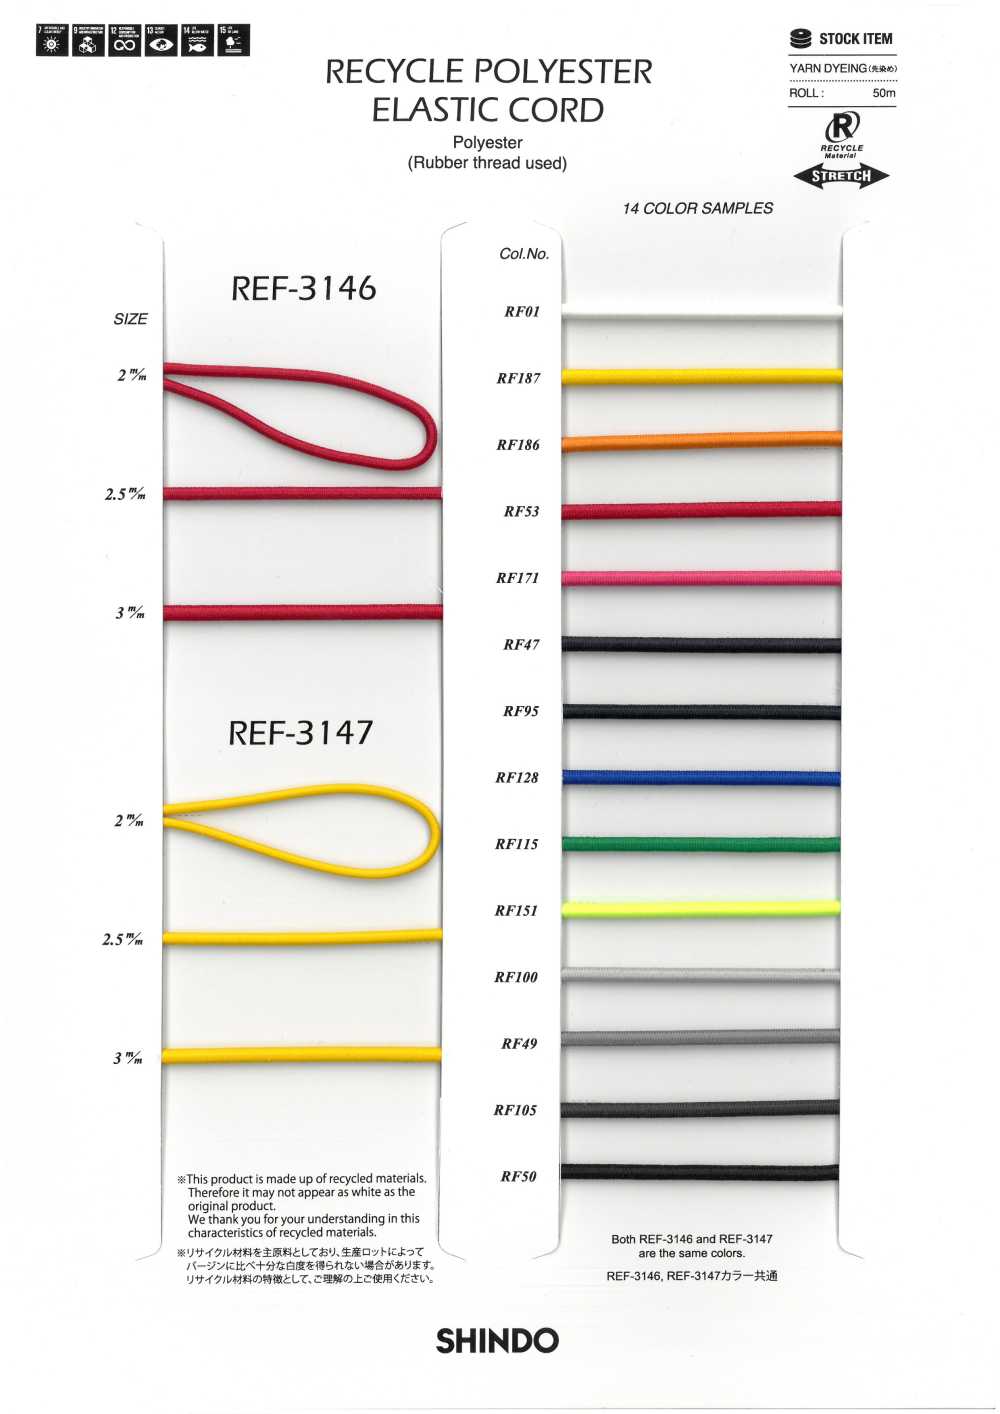 REF-3147 Cordon élastique En Polyester Recyclé (Type Dur)[Ruban Ruban Cordon] SHINDO(SIC)